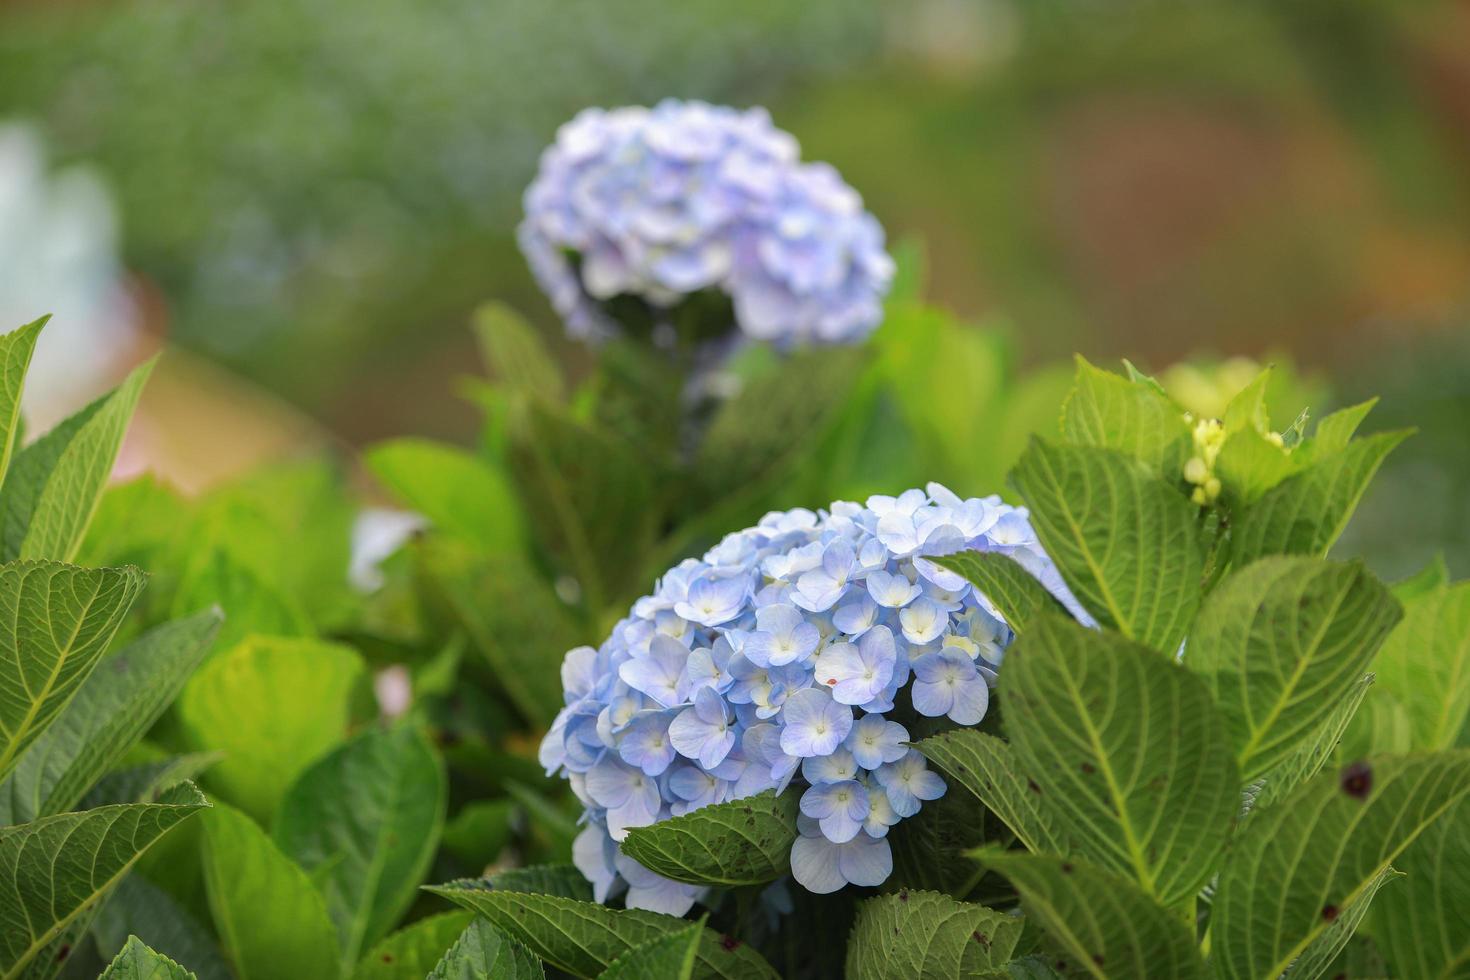 de witblauwe bloem noemt hortensia in een tuin. hortensia bloem en ochtendlicht is een prachtige bloem. foto